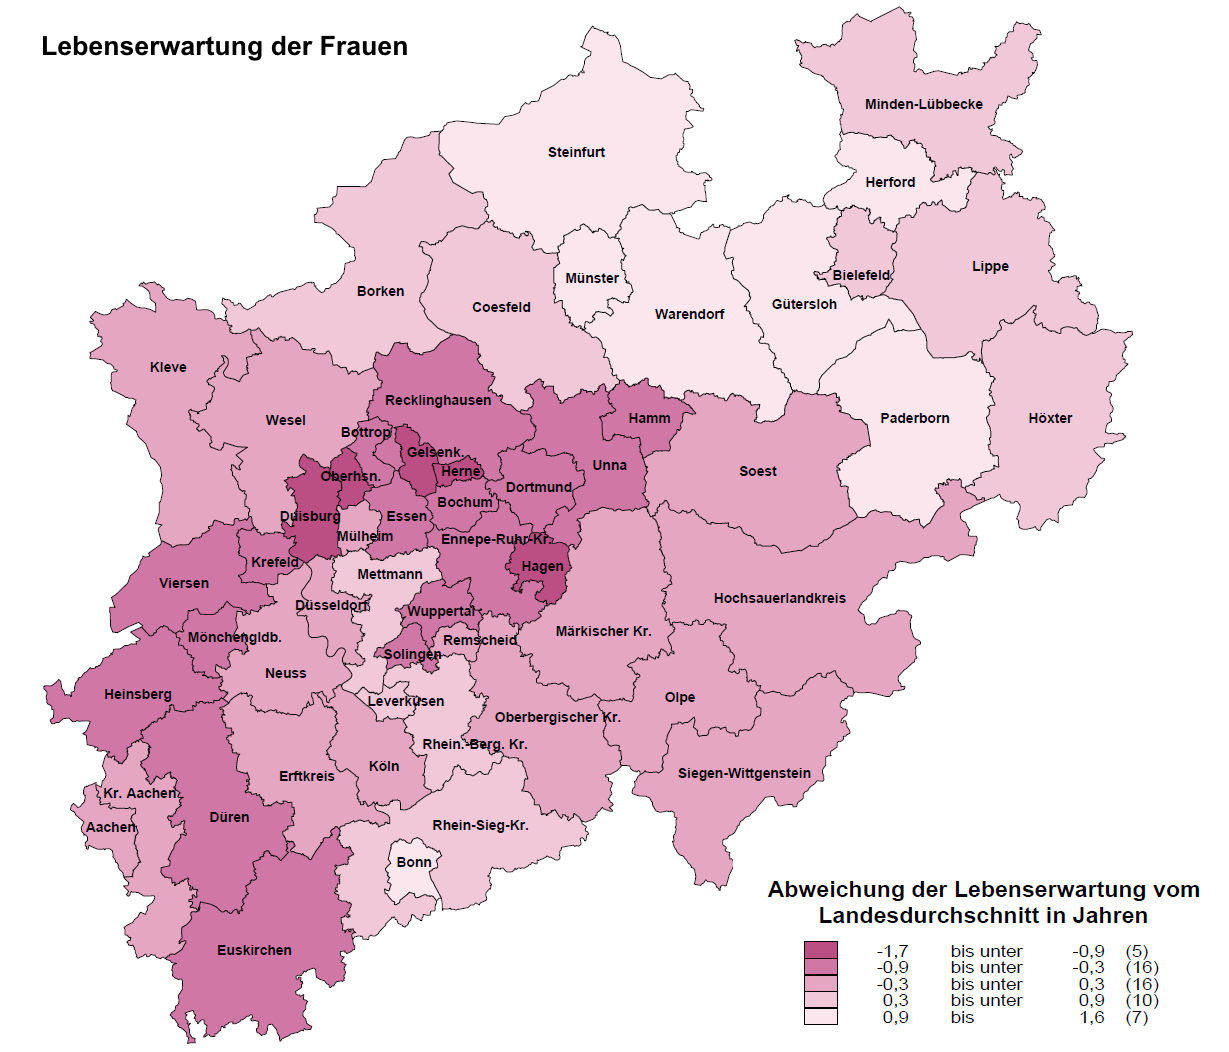 NRW-Kreiskarte zur Lebenserwartung von Frauen, 3-Jahres-Mittelwert der Jahre 2013 bis 2015